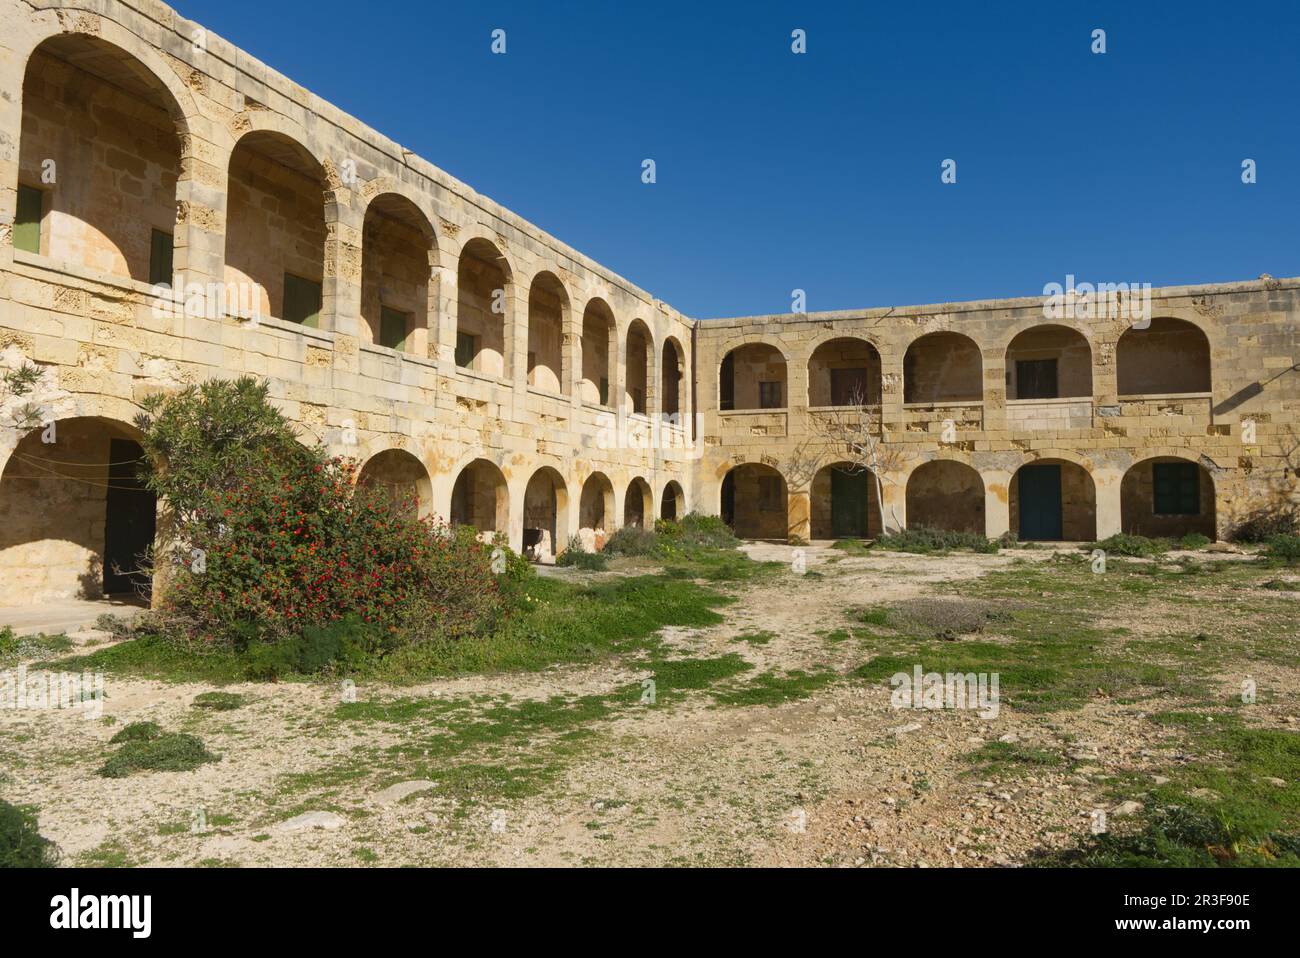 Former quarantine station for seamen,Comino, Mediterranean Sea, island state, Malta Stock Photo